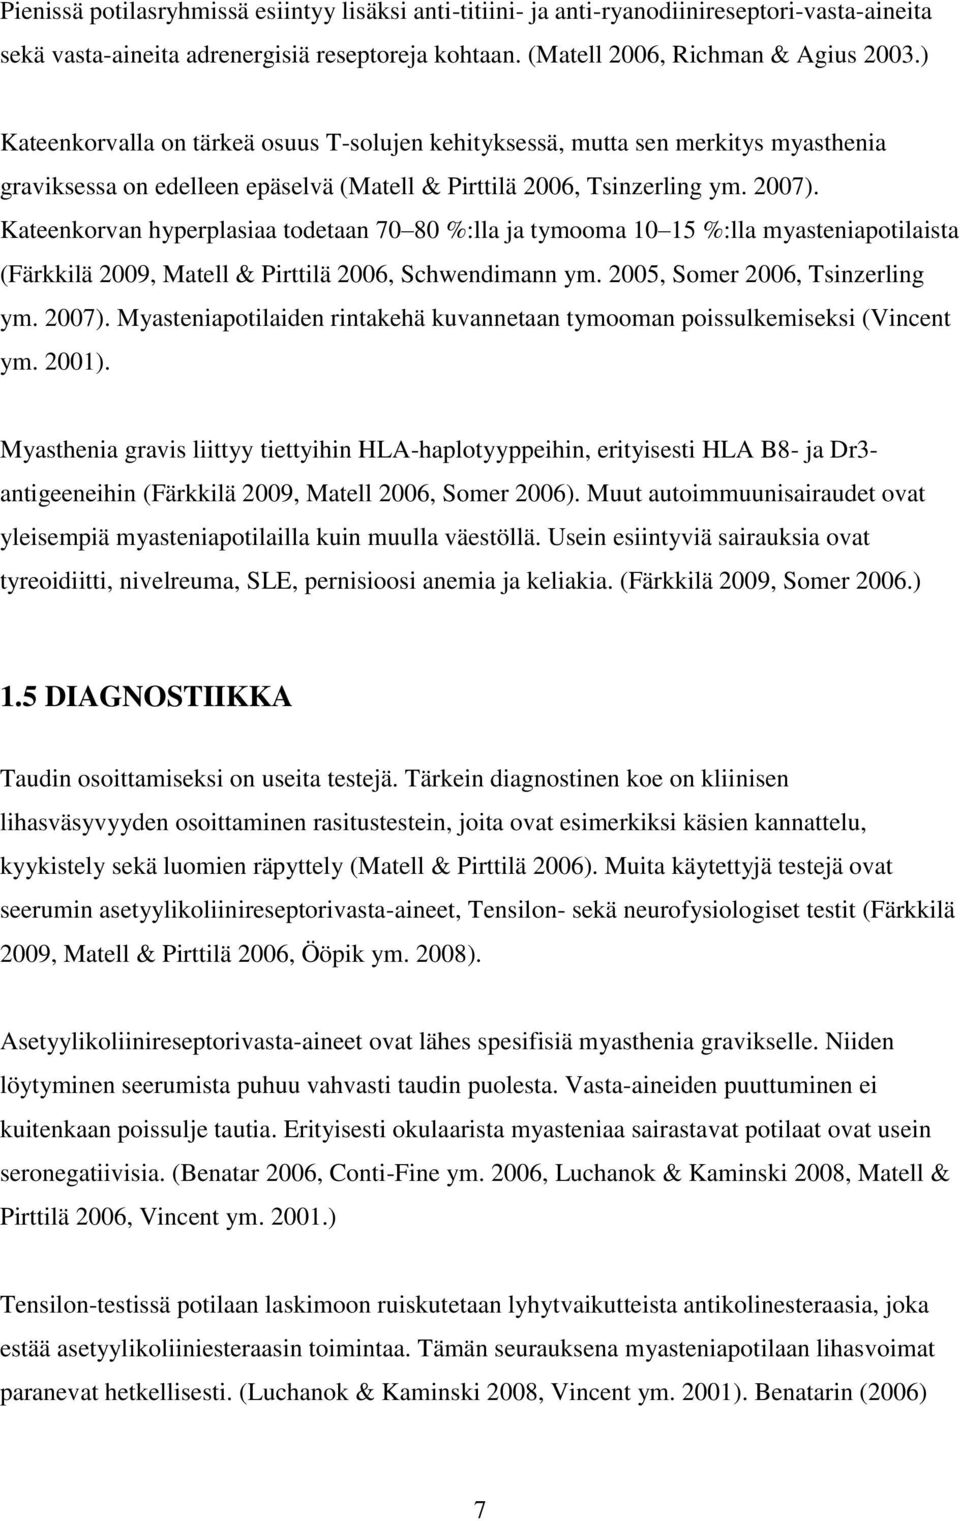 Kateenkorvan hyperplasiaa todetaan 70 80 %:lla ja tymooma 10 15 %:lla myasteniapotilaista (Färkkilä 2009, Matell & Pirttilä 2006, Schwendimann ym. 2005, Somer 2006, Tsinzerling ym. 2007).